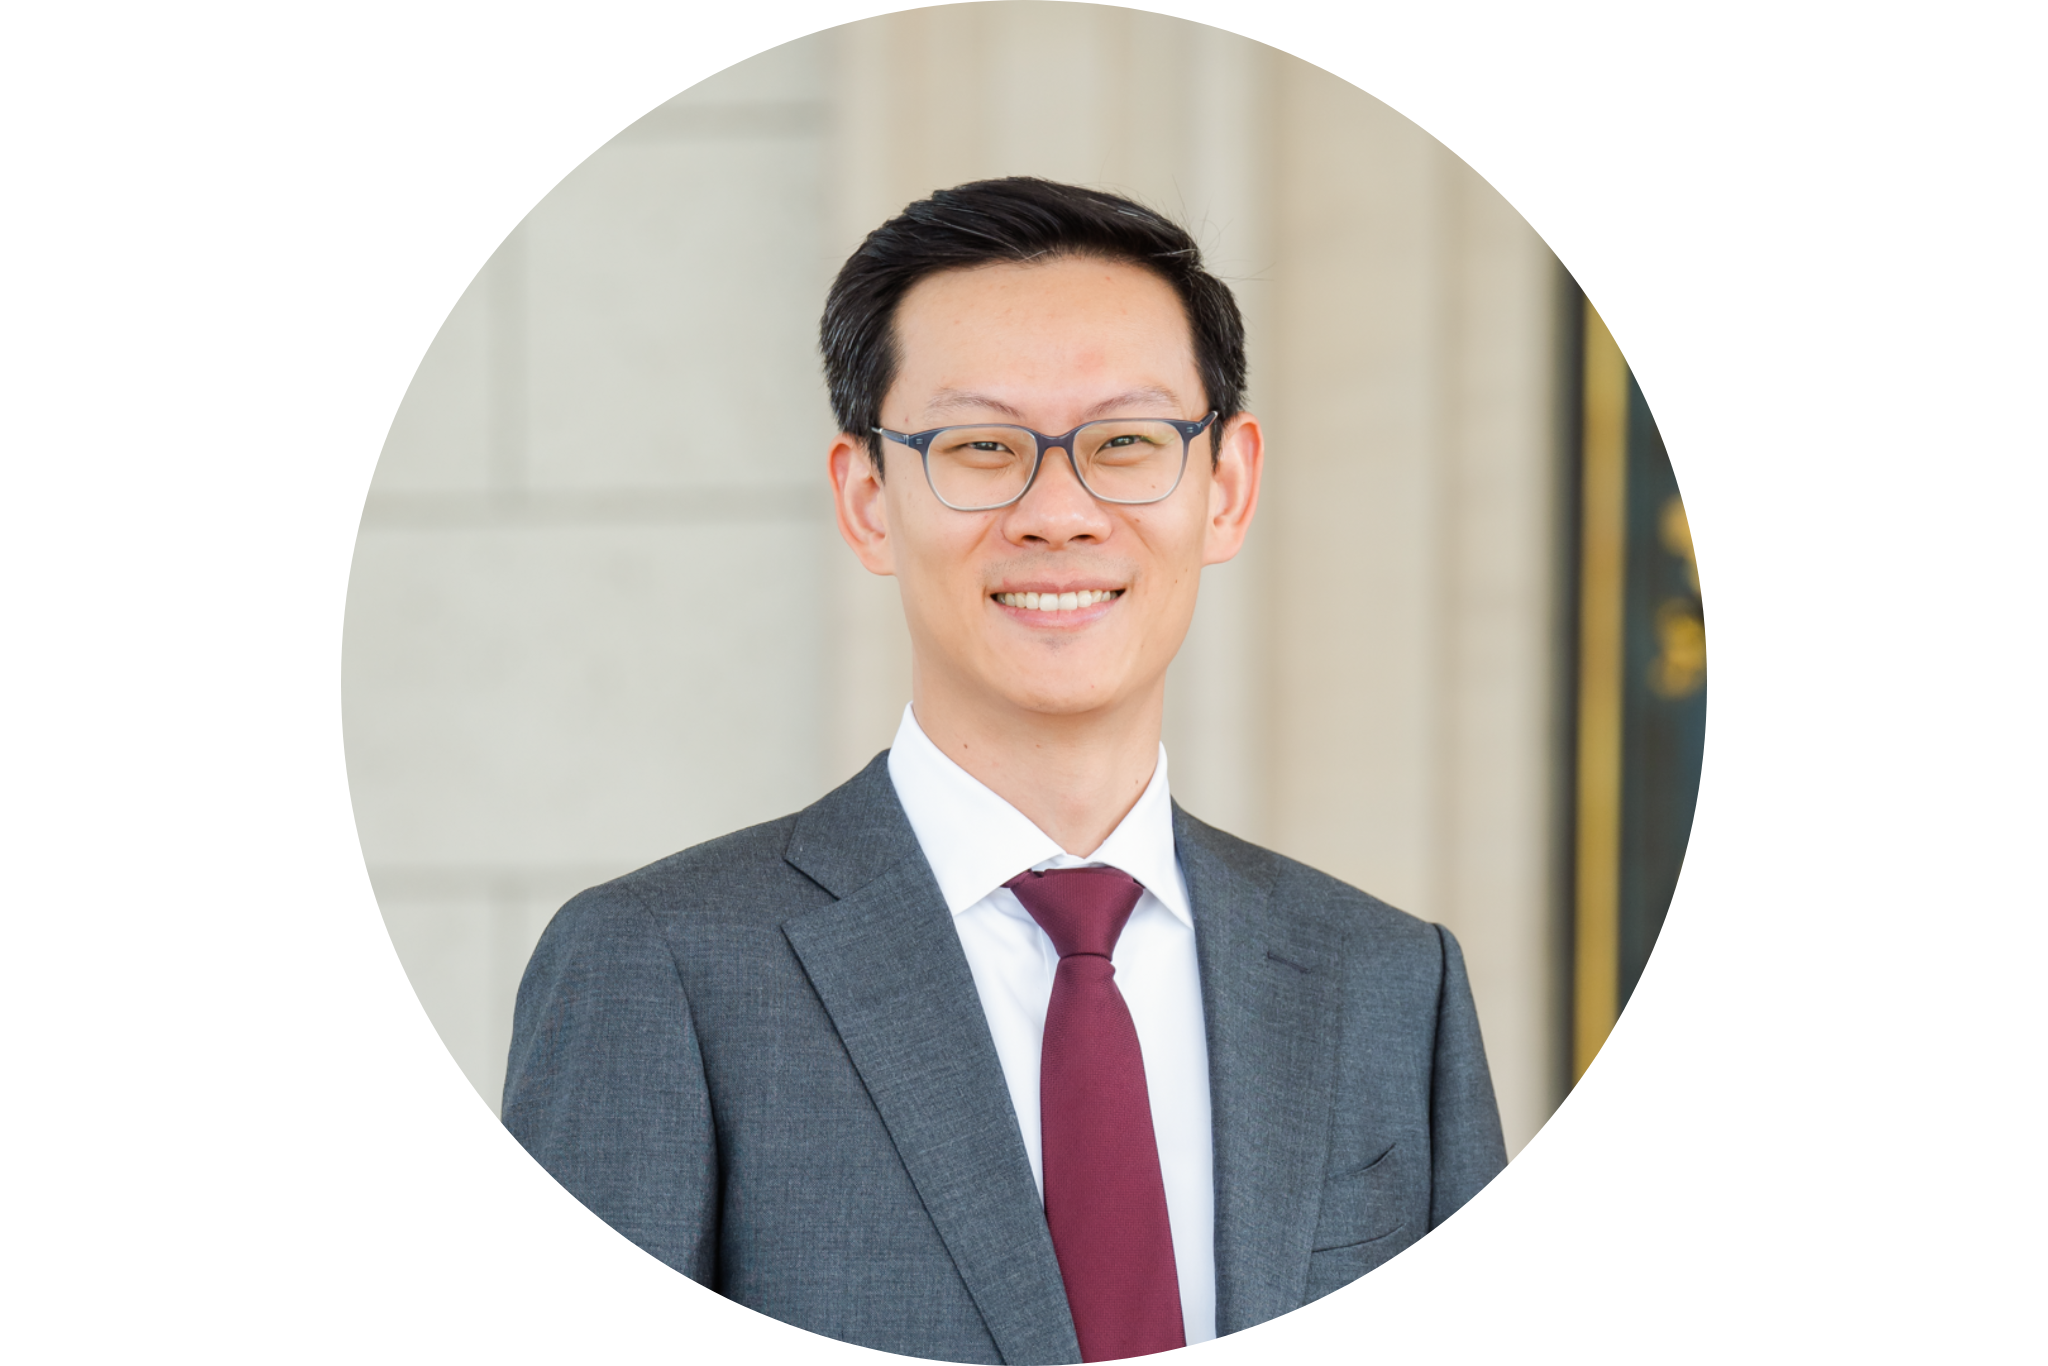 Liang Shen, MD, MPH